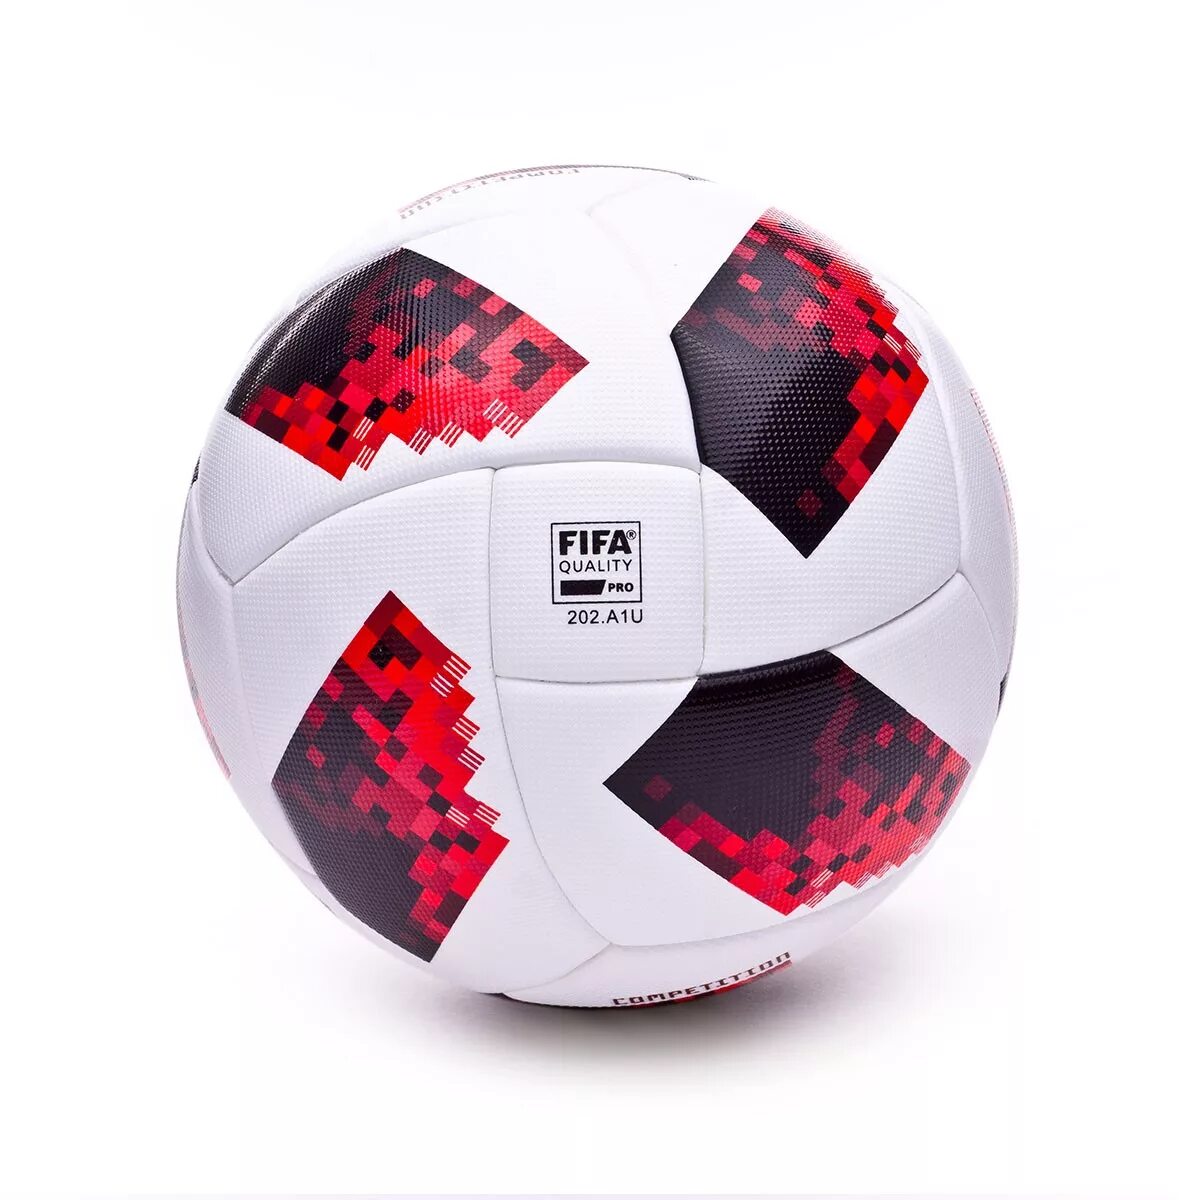 Футбольный мяч fifa quality pro. Adidas FIFA quality Pro 202. A1l. Adidas Telstar FIFA бесшовный. Мяч футбольный адидас ФИФА quality Pro 202.a1p. Адидас FIFA quality Pro.